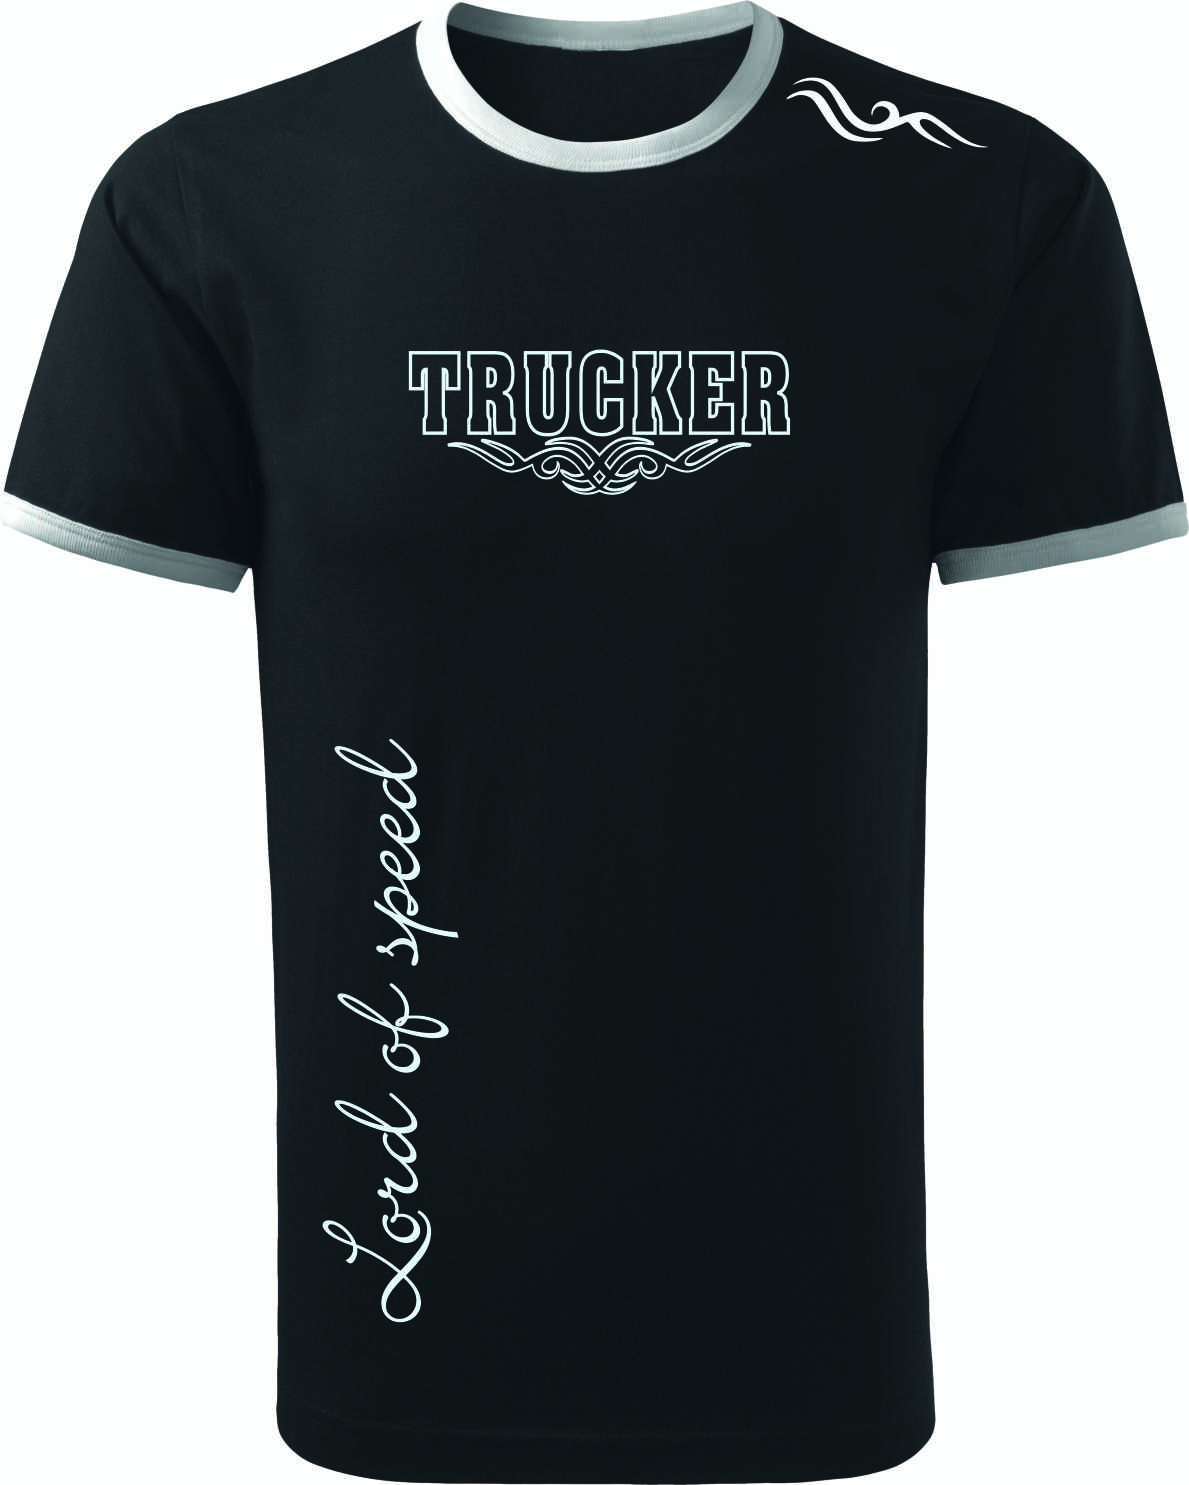 Truck tričko TRUCKER Lord of speed